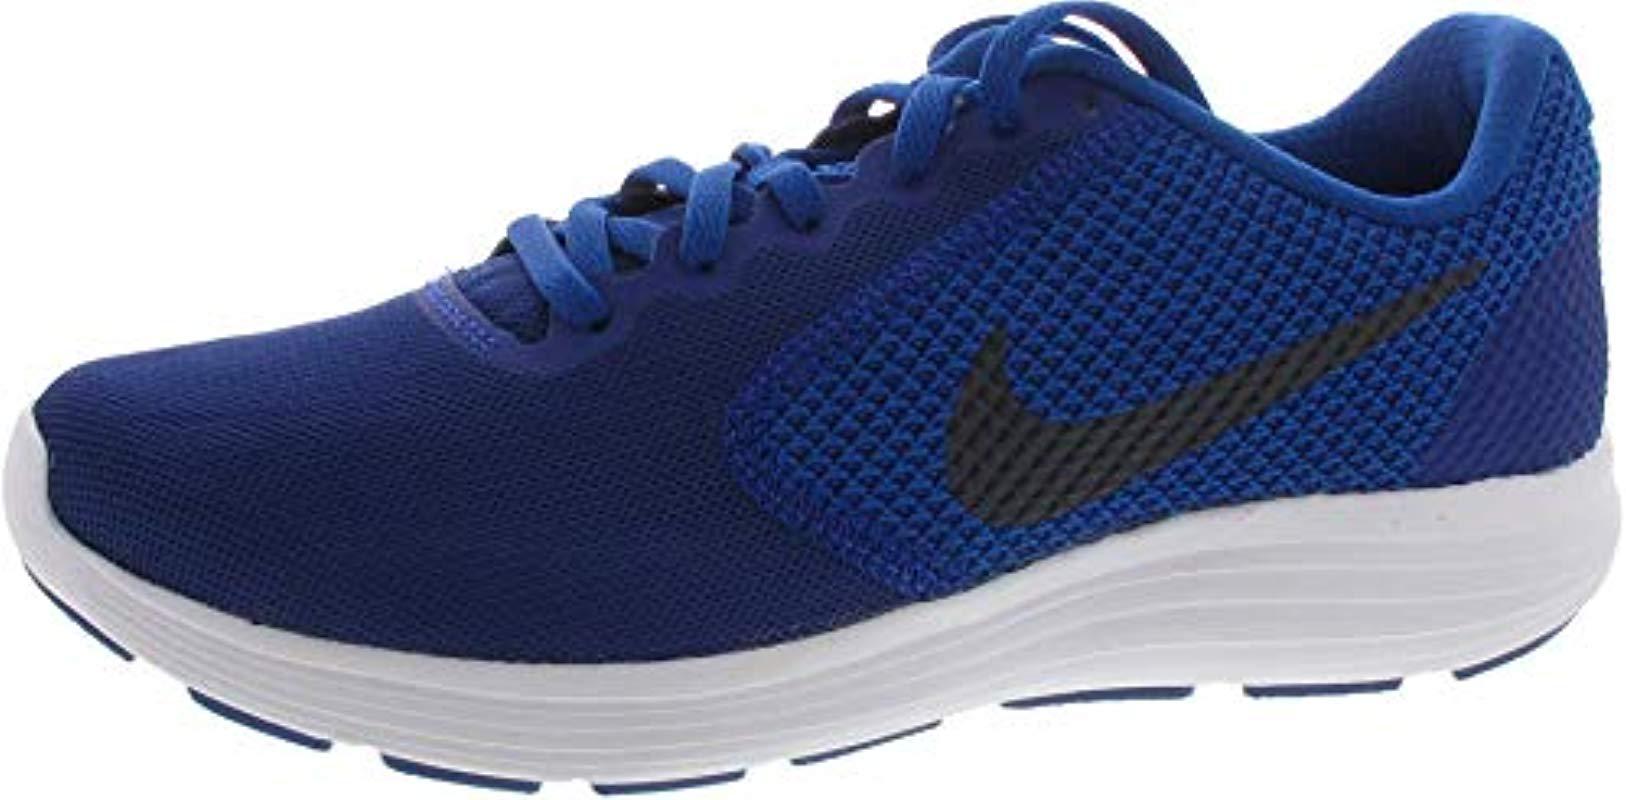 Nike Rubber Revolution 3 Running Shoe in Blue for Men - Lyst